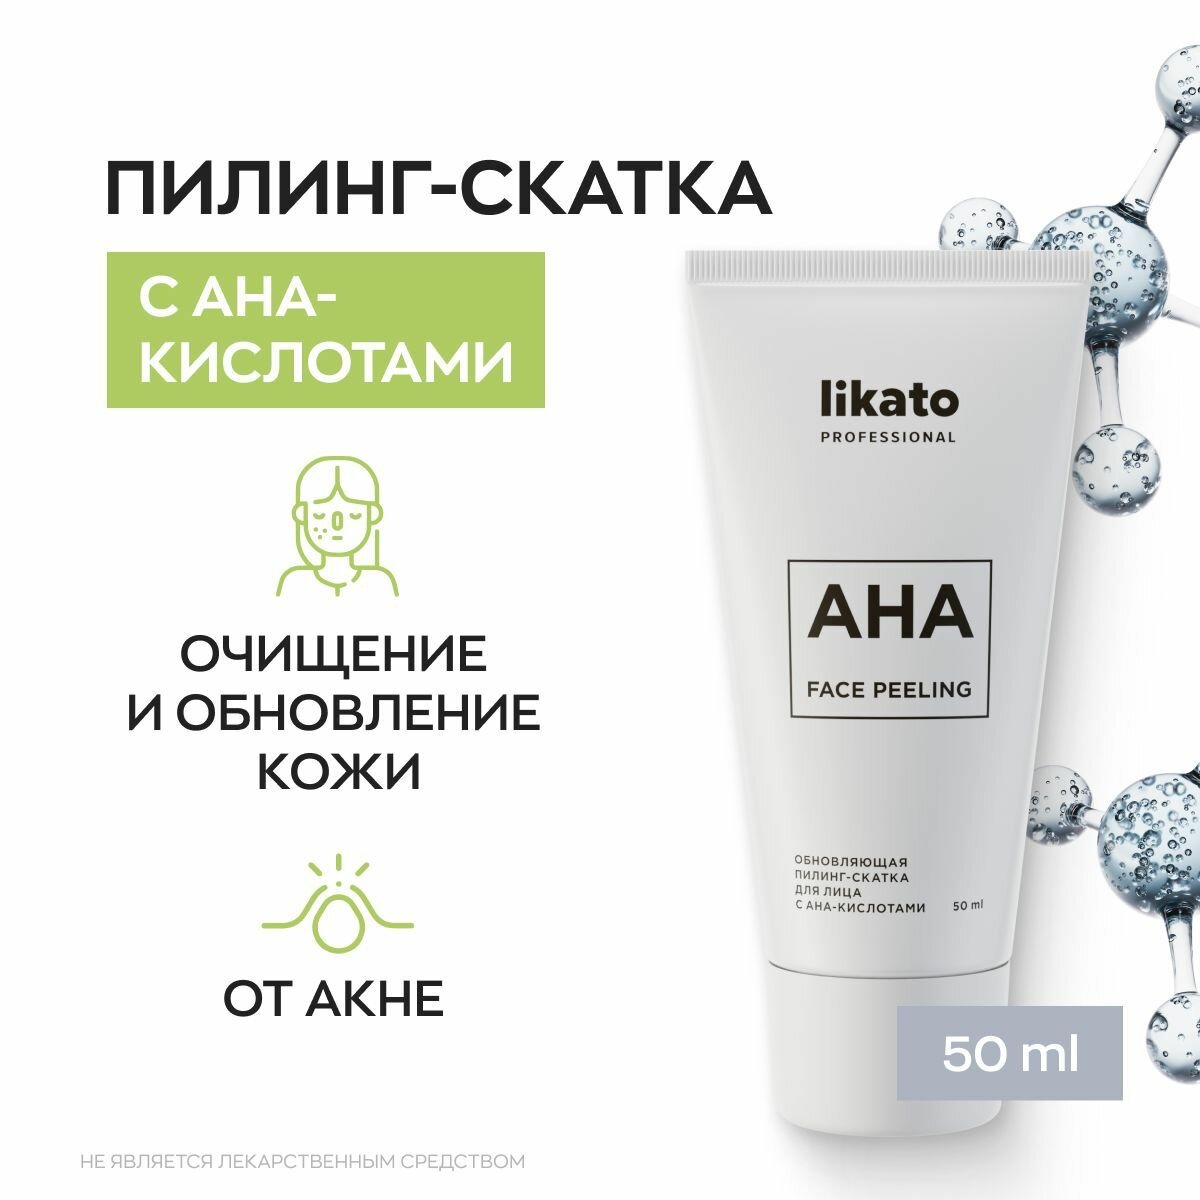 Likato Professional Обновляющая пилинг-скатка для очищения лица с AHA-кислотами, от прыщей, 50 мл